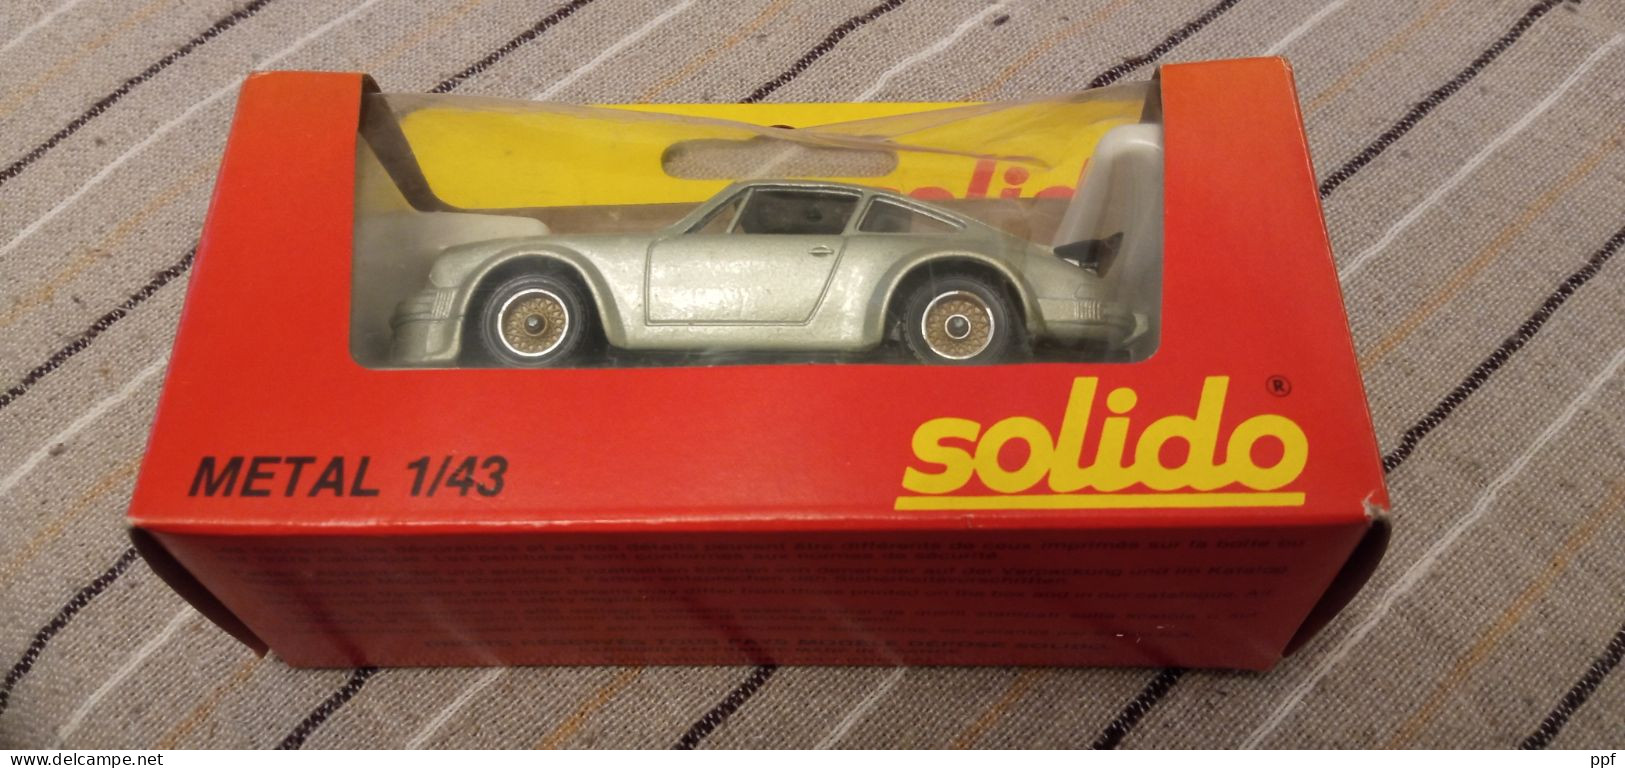 Solido, Porsche 934 nuova in scatola originale.